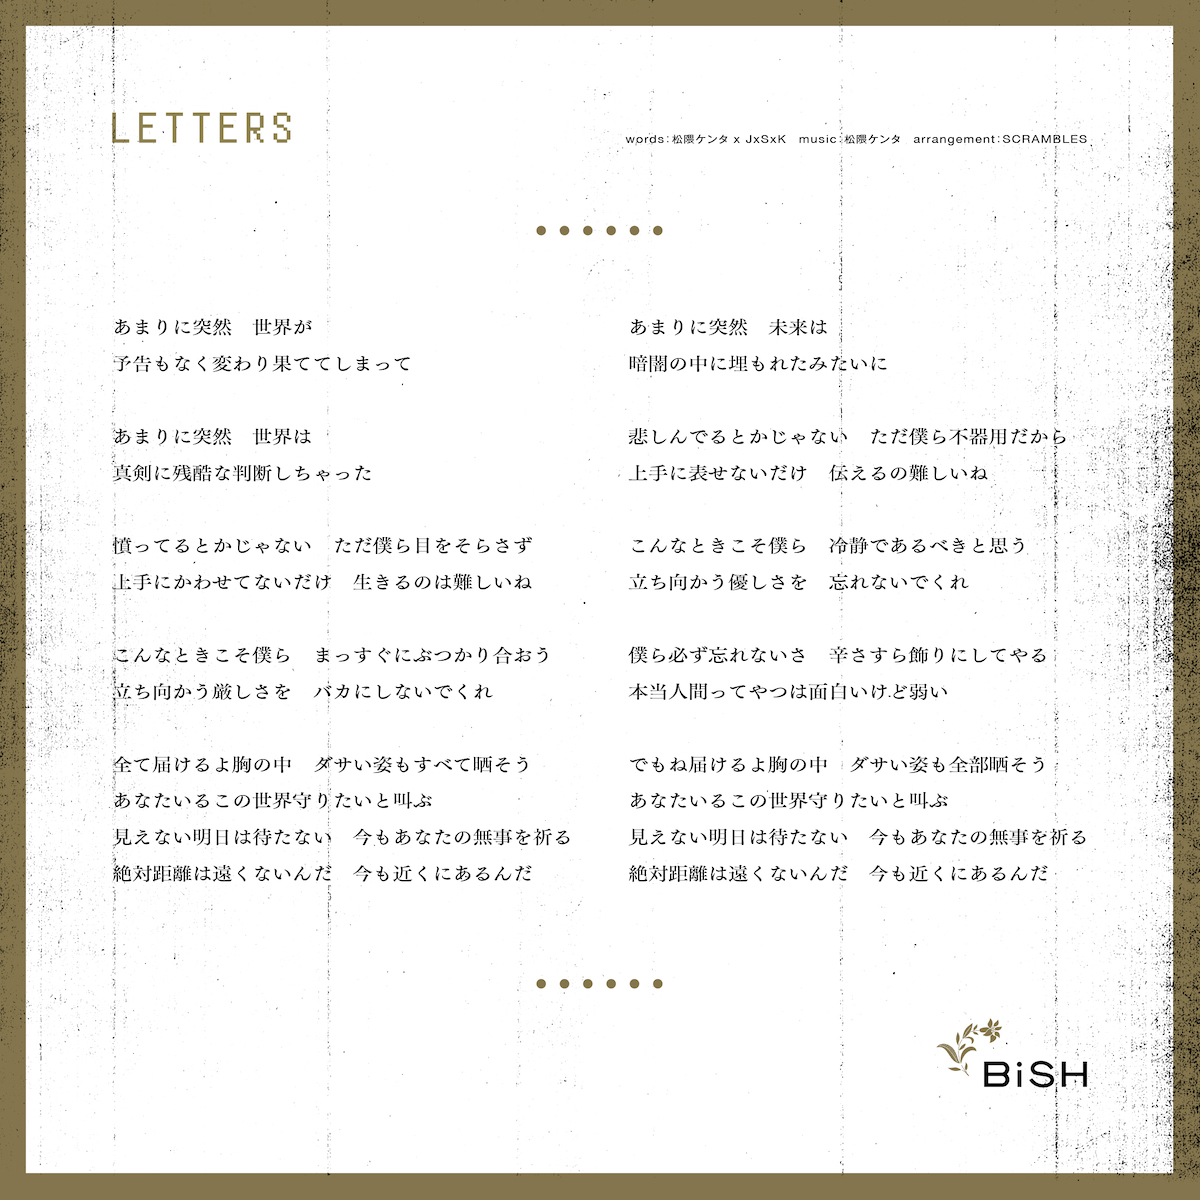 Bish メジャー3 5thアルバム Letters トラックリスト リード曲の歌詞画像公開 ガジェット通信 Getnews